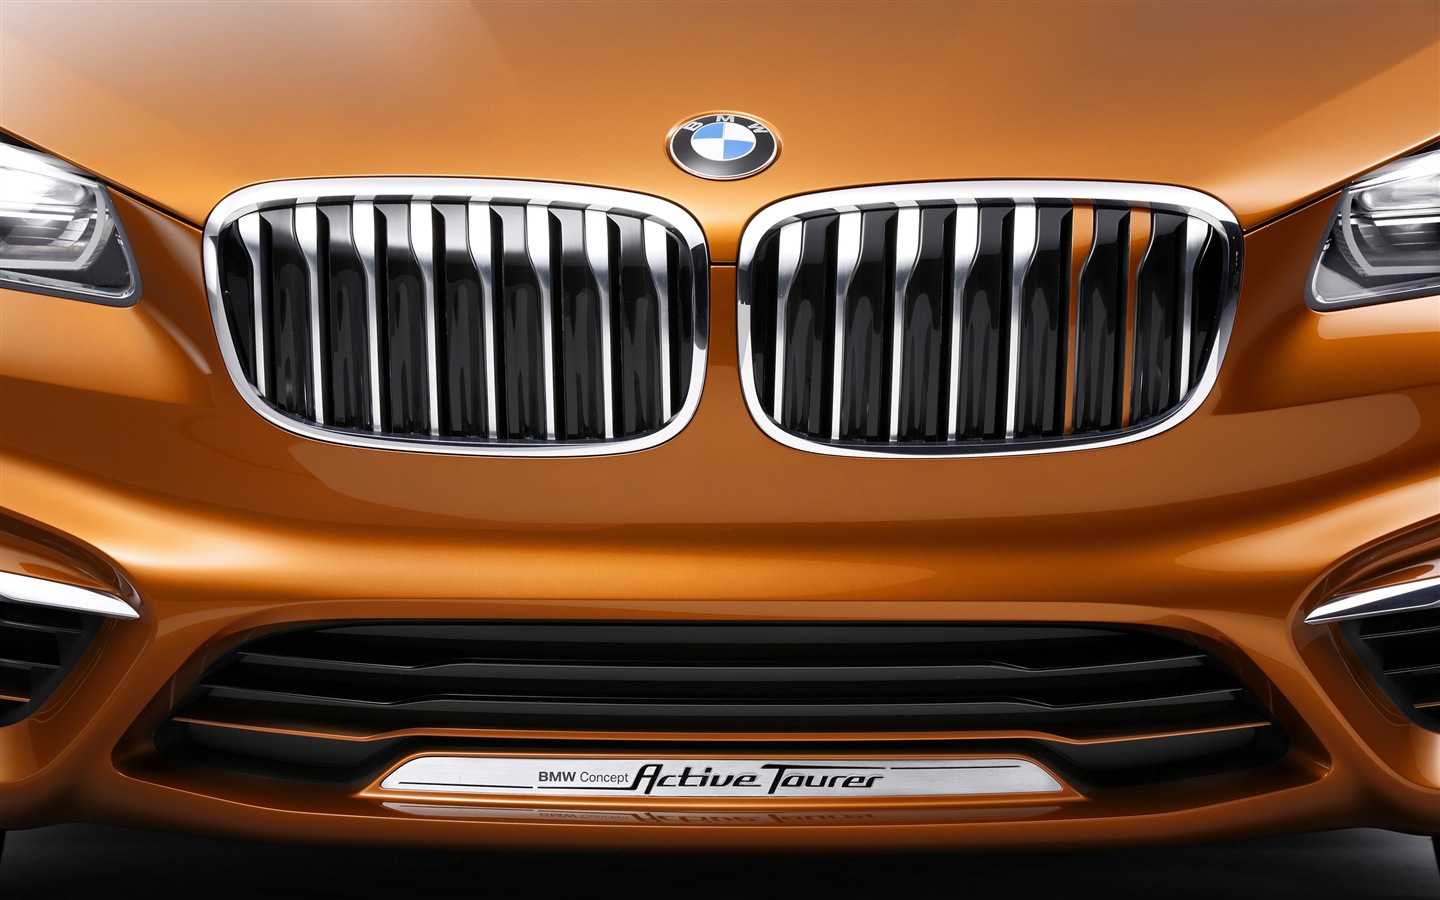 2013 BMWコンセプトアクティブツアラーのHDの壁紙 #15 - 1440x900